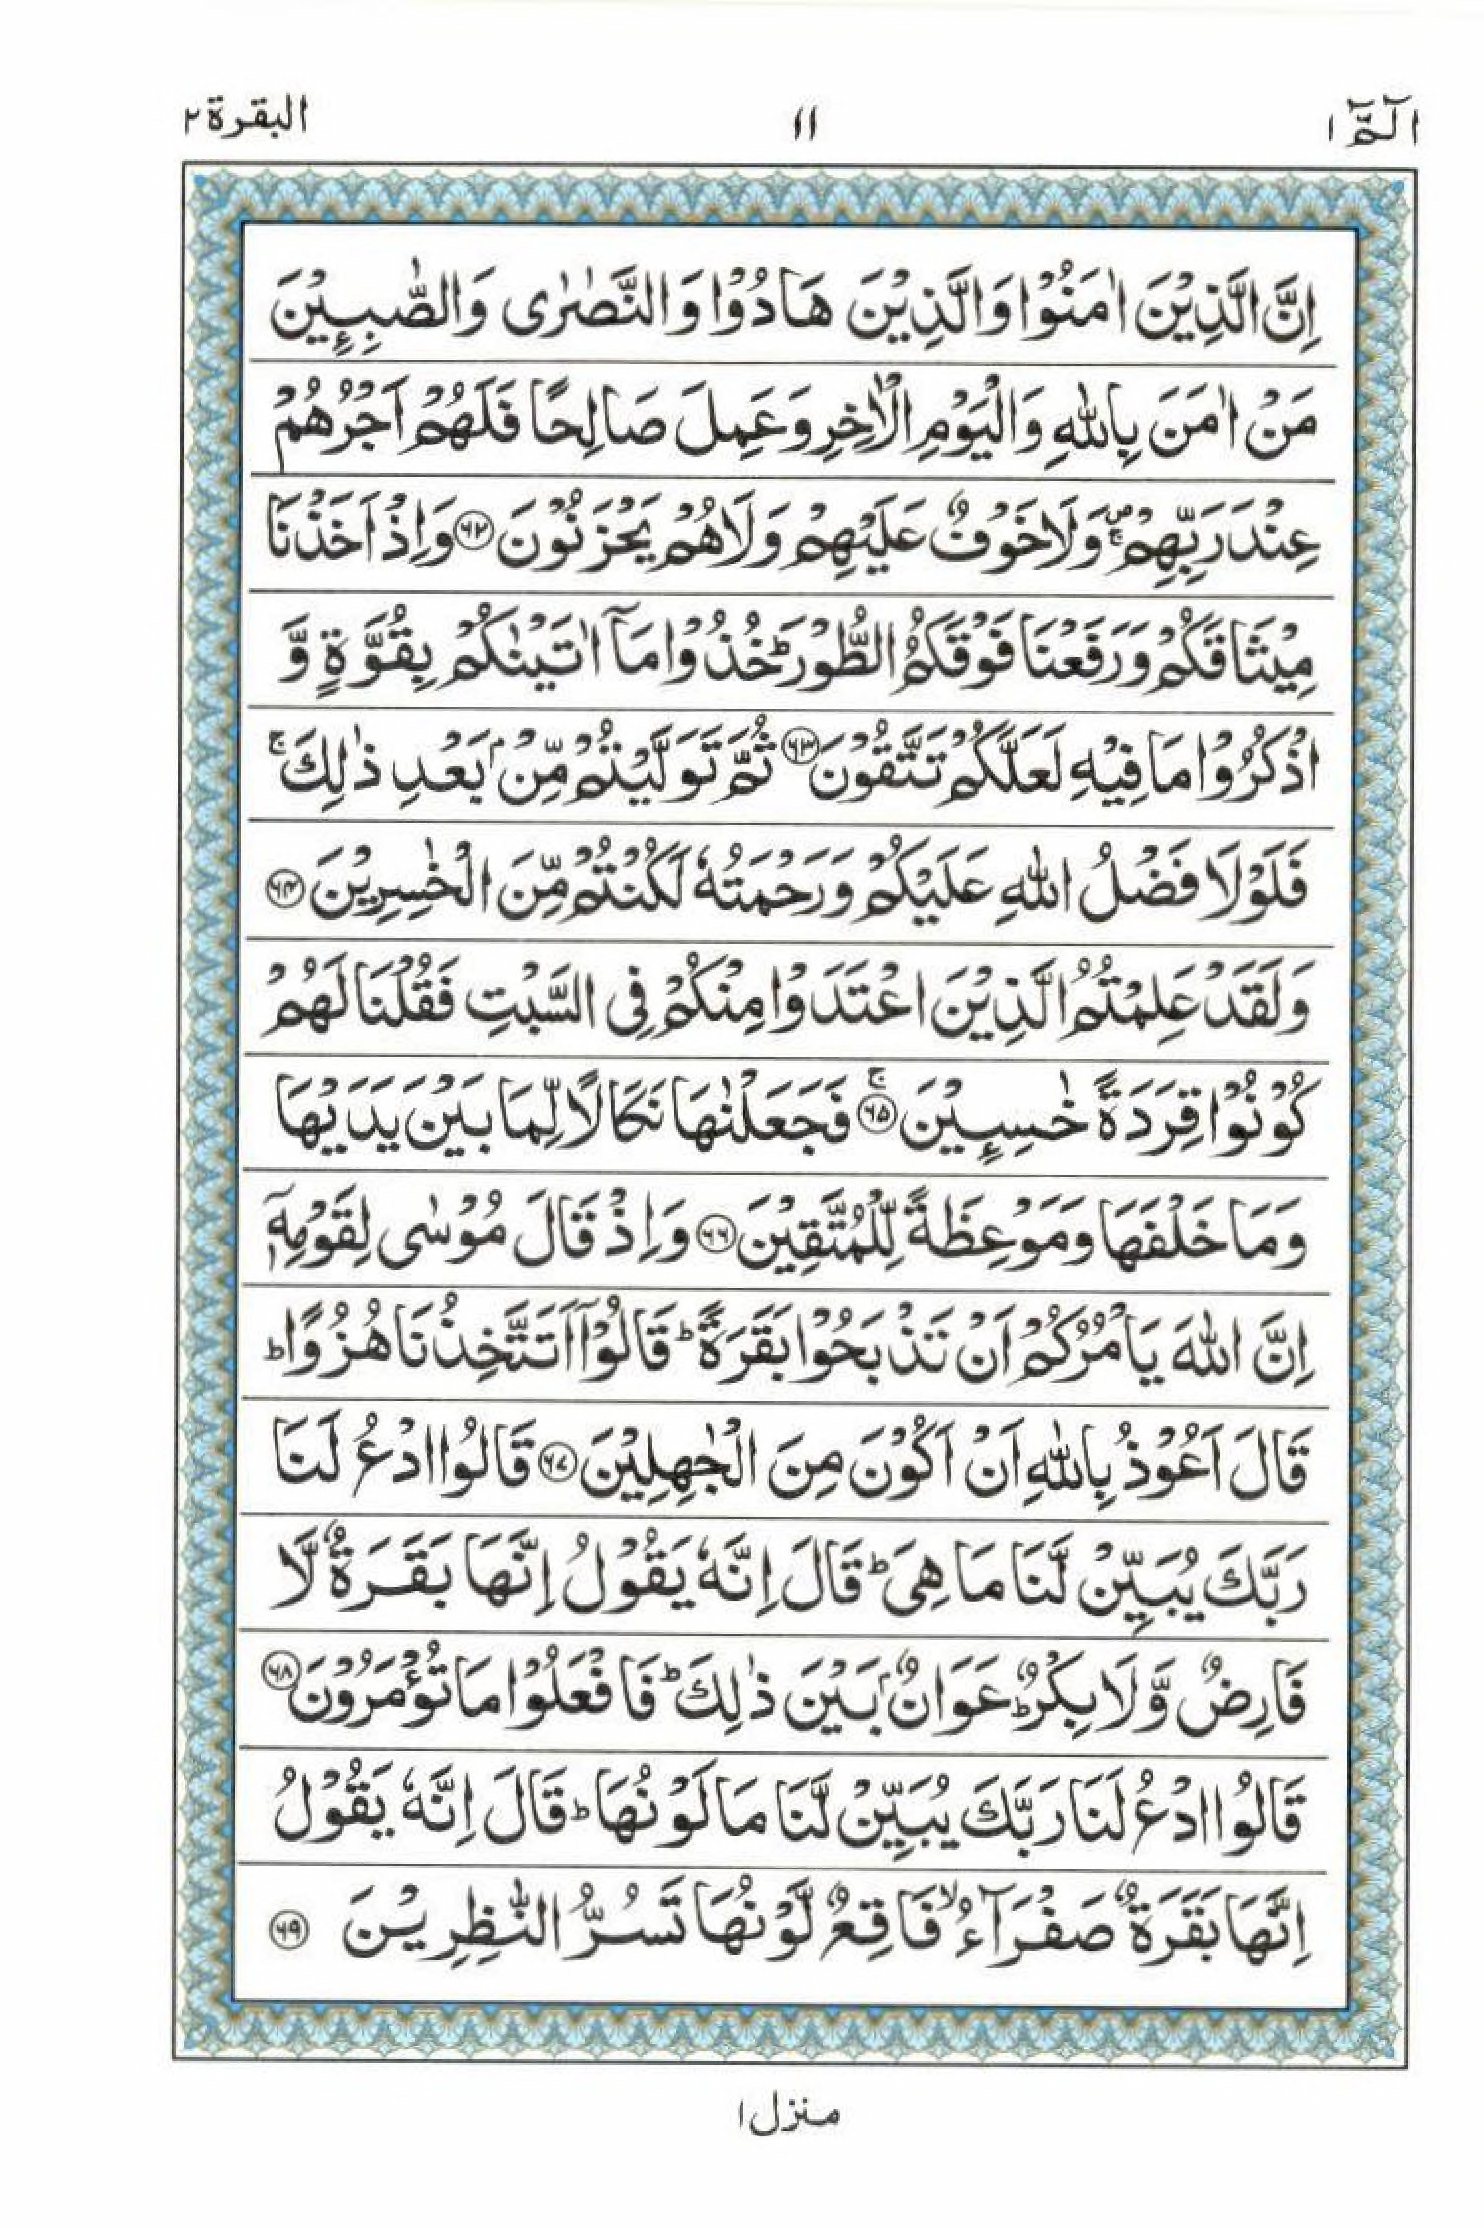 Read 15 Lines Al Quran Part 1 Page No 11, Practice Quran